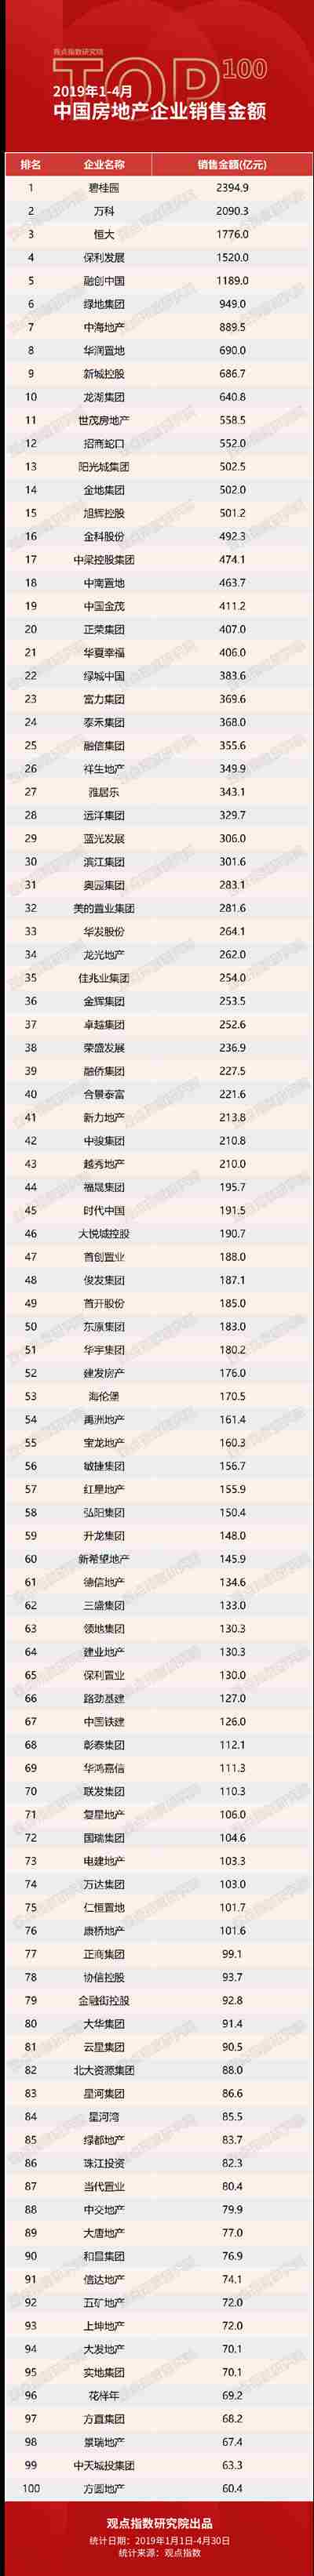 观点指数·2019年1-4月中国房地产企业销售金额TOP100